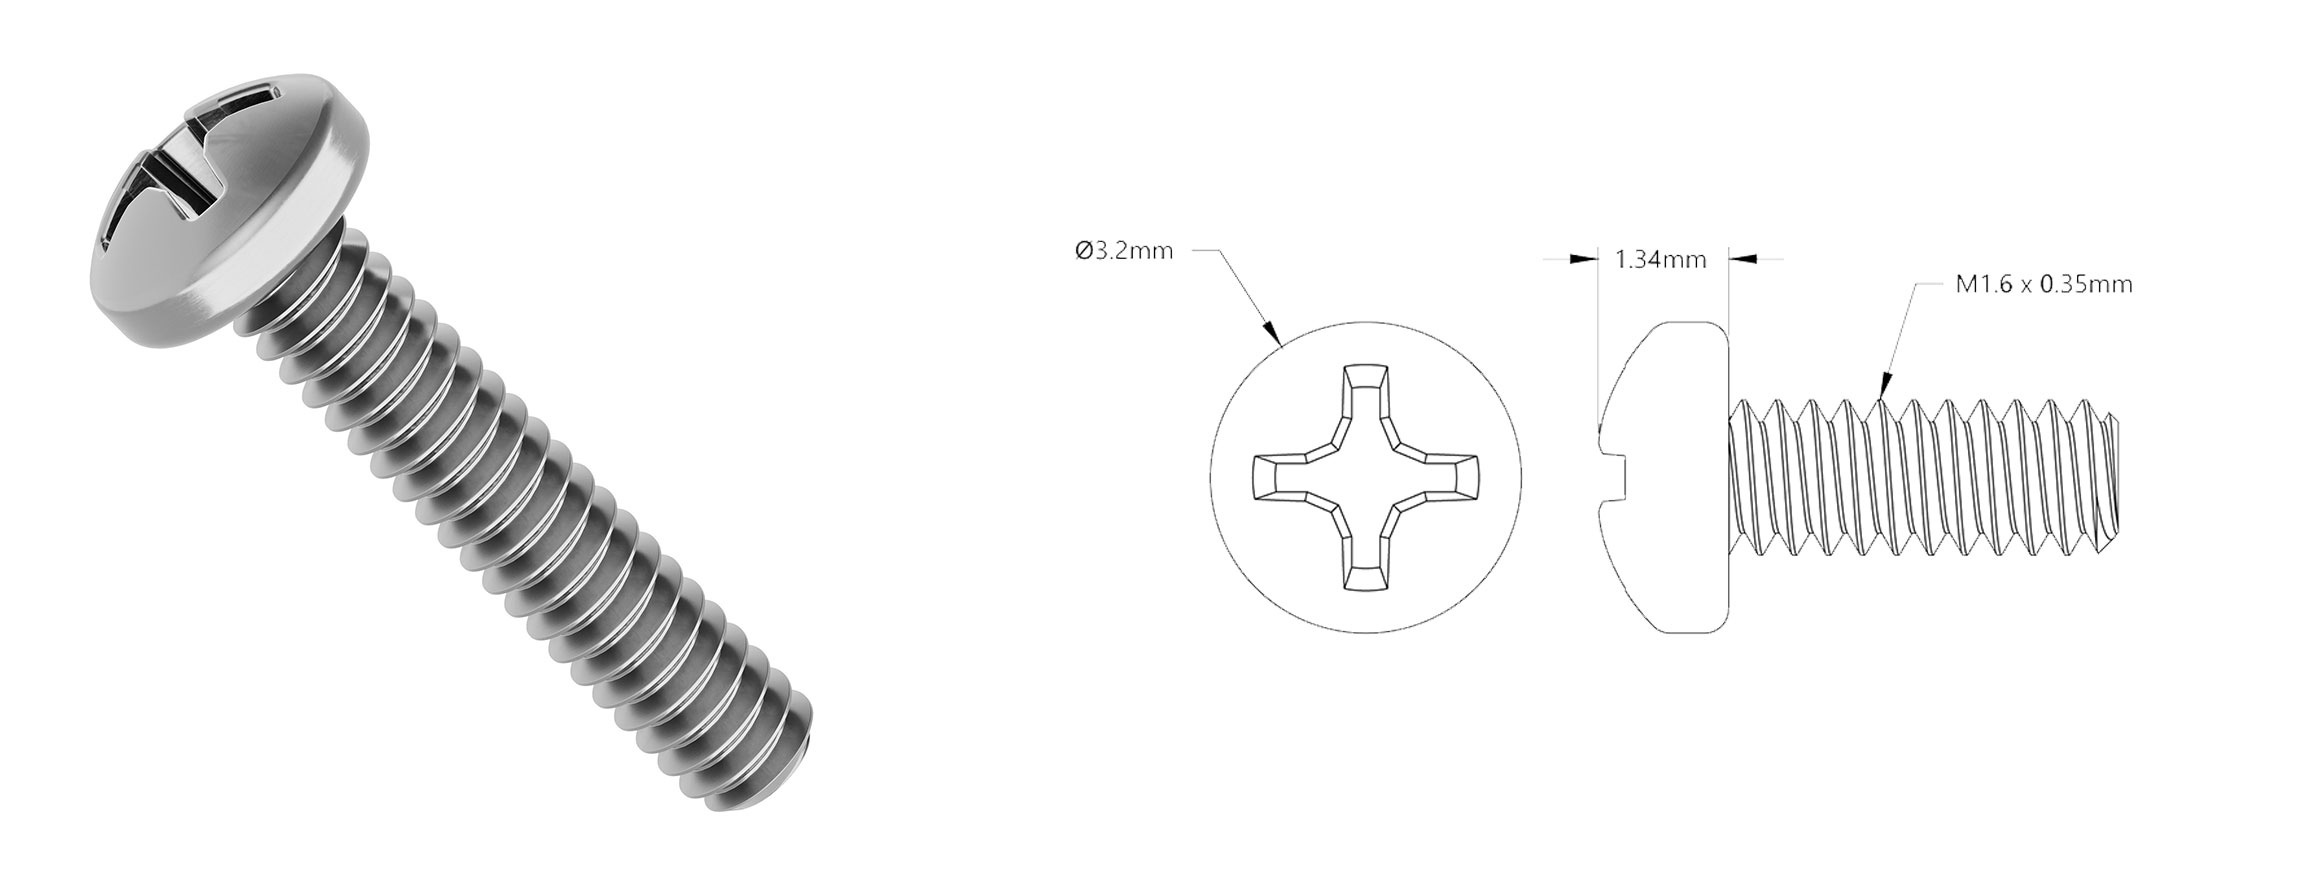 m1.6-pan-head-screws.jpg